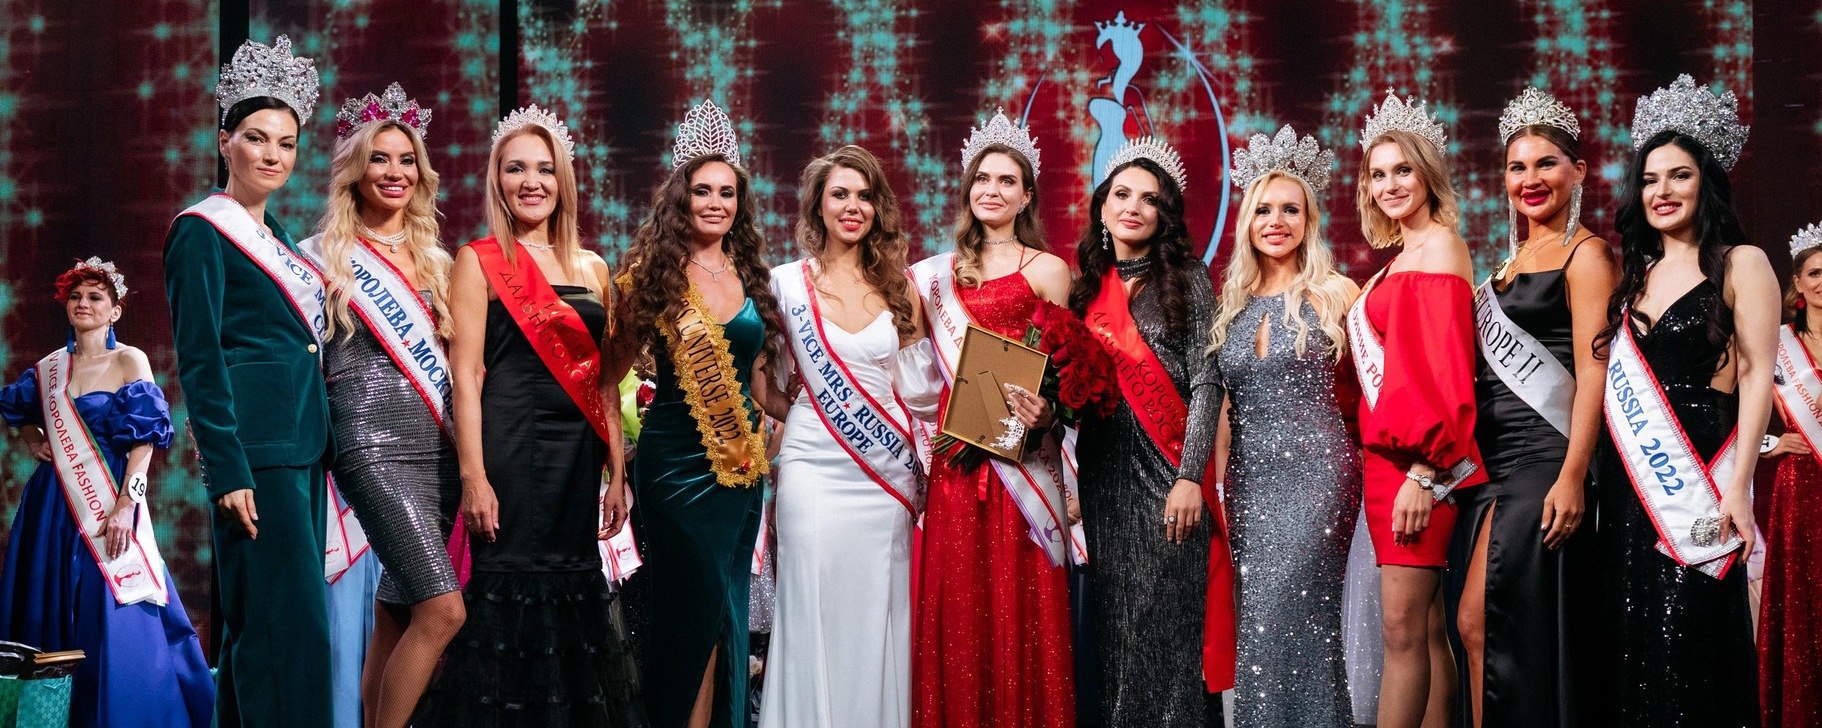 В Хабаровске пройдет финал конкурса красоты «Королева Дальнего Востока»